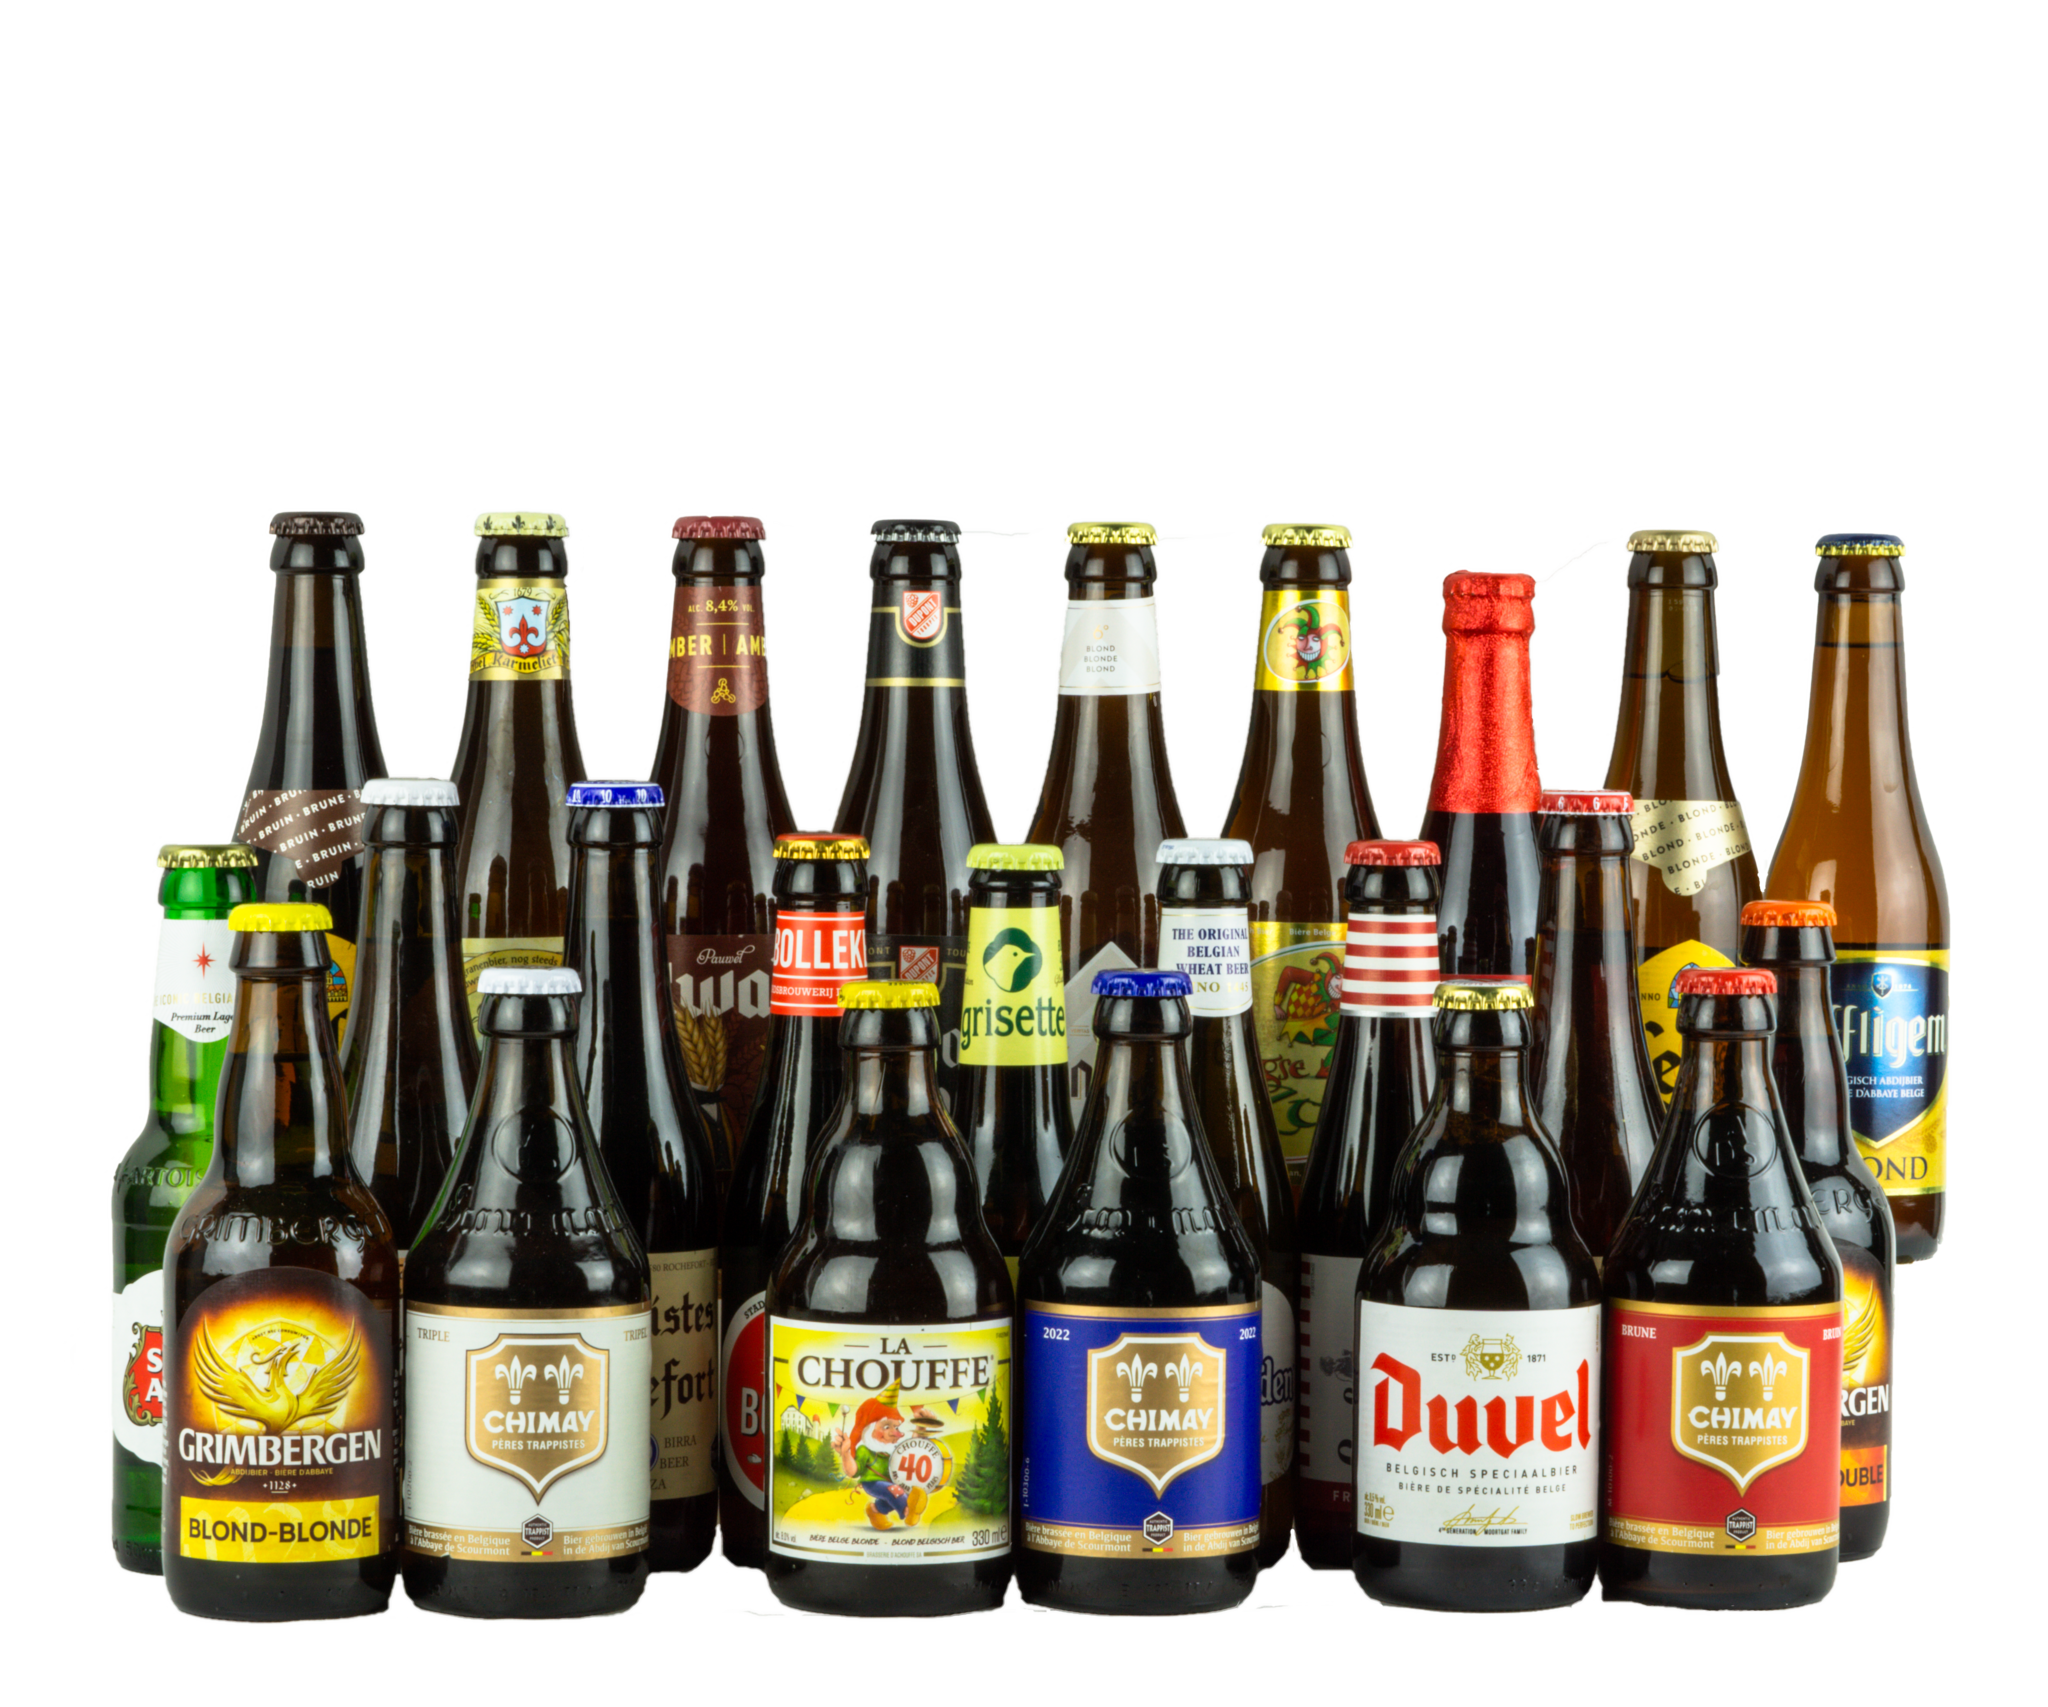 belgian beer brands popular